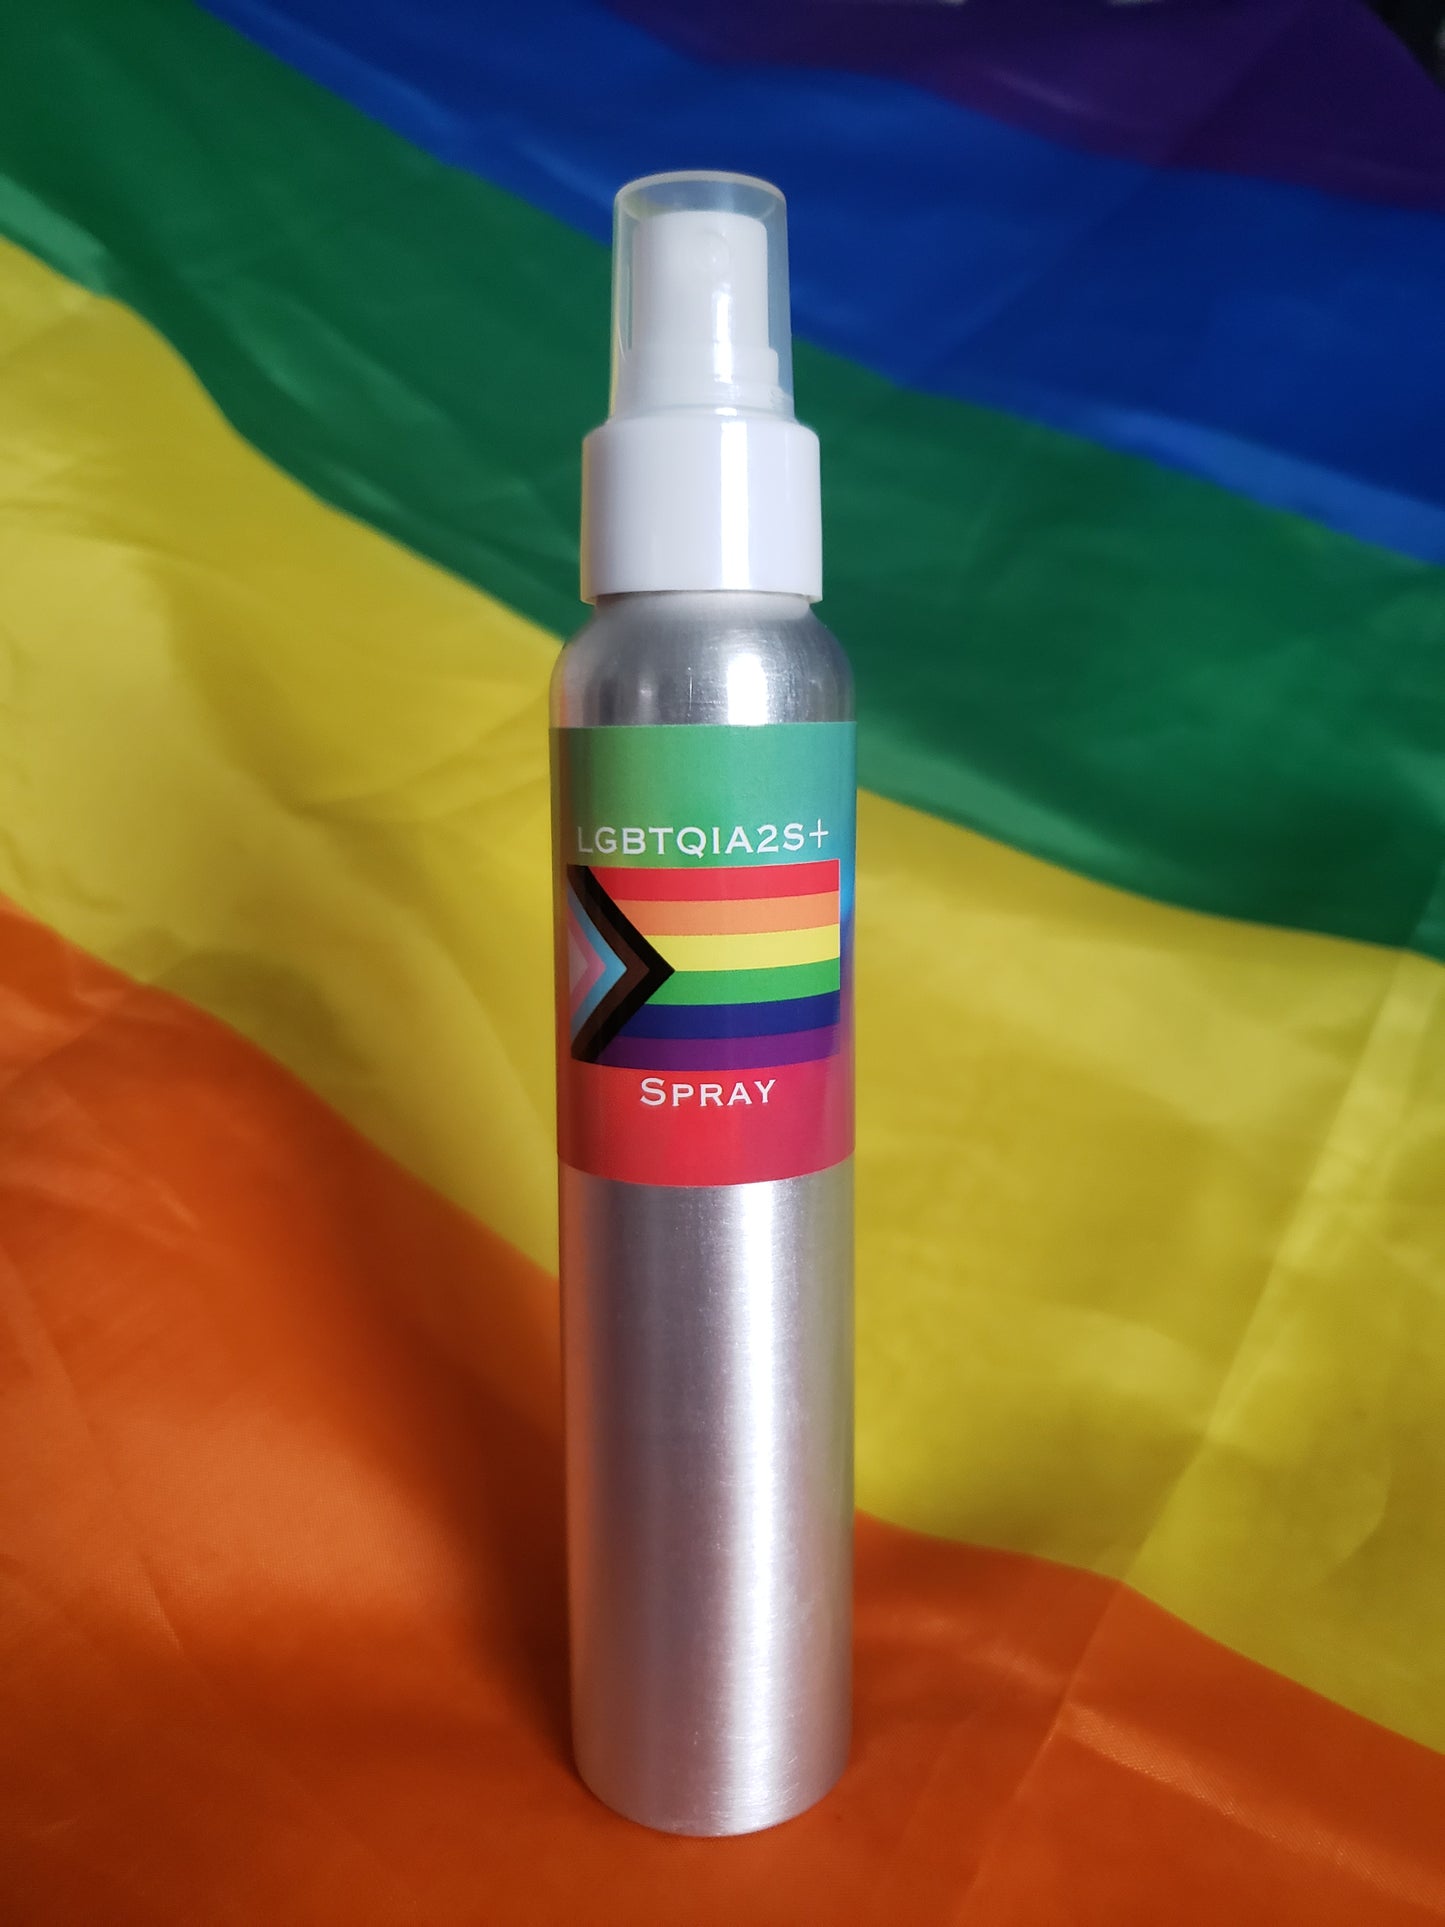 LGBTQIA2S+ Spray